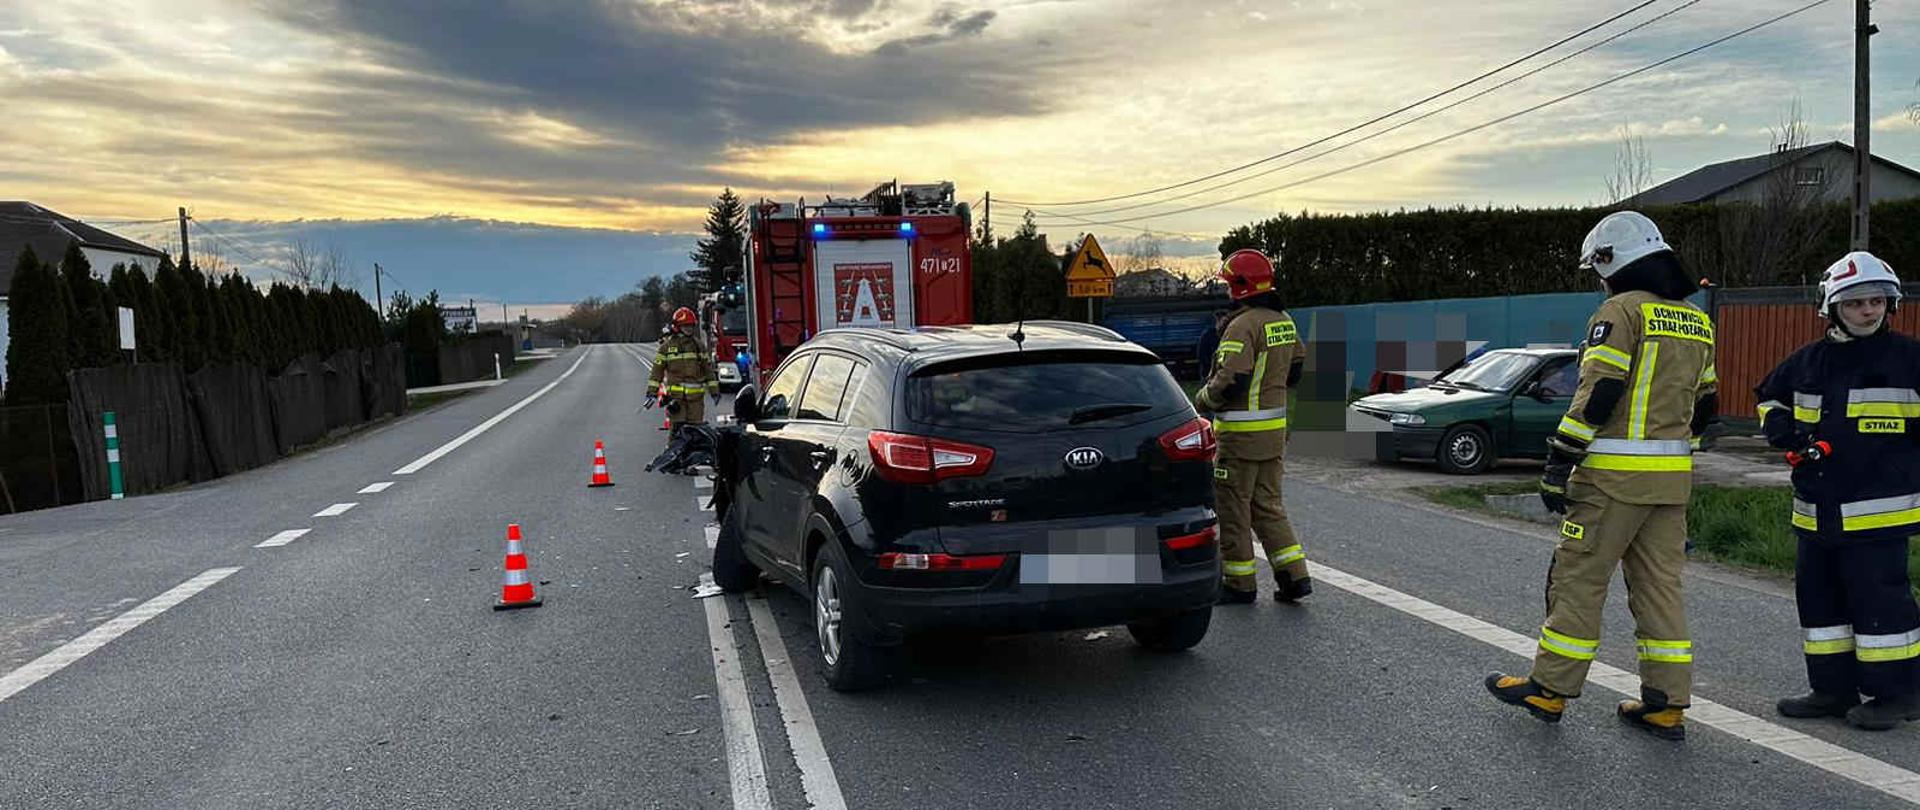 Zdjęcie – przedstawia samochód biorący udział w wypadku oraz strażaków pracujących na miejscu zdarzenia. Na drugim planie widać samochód pożarniczy. 